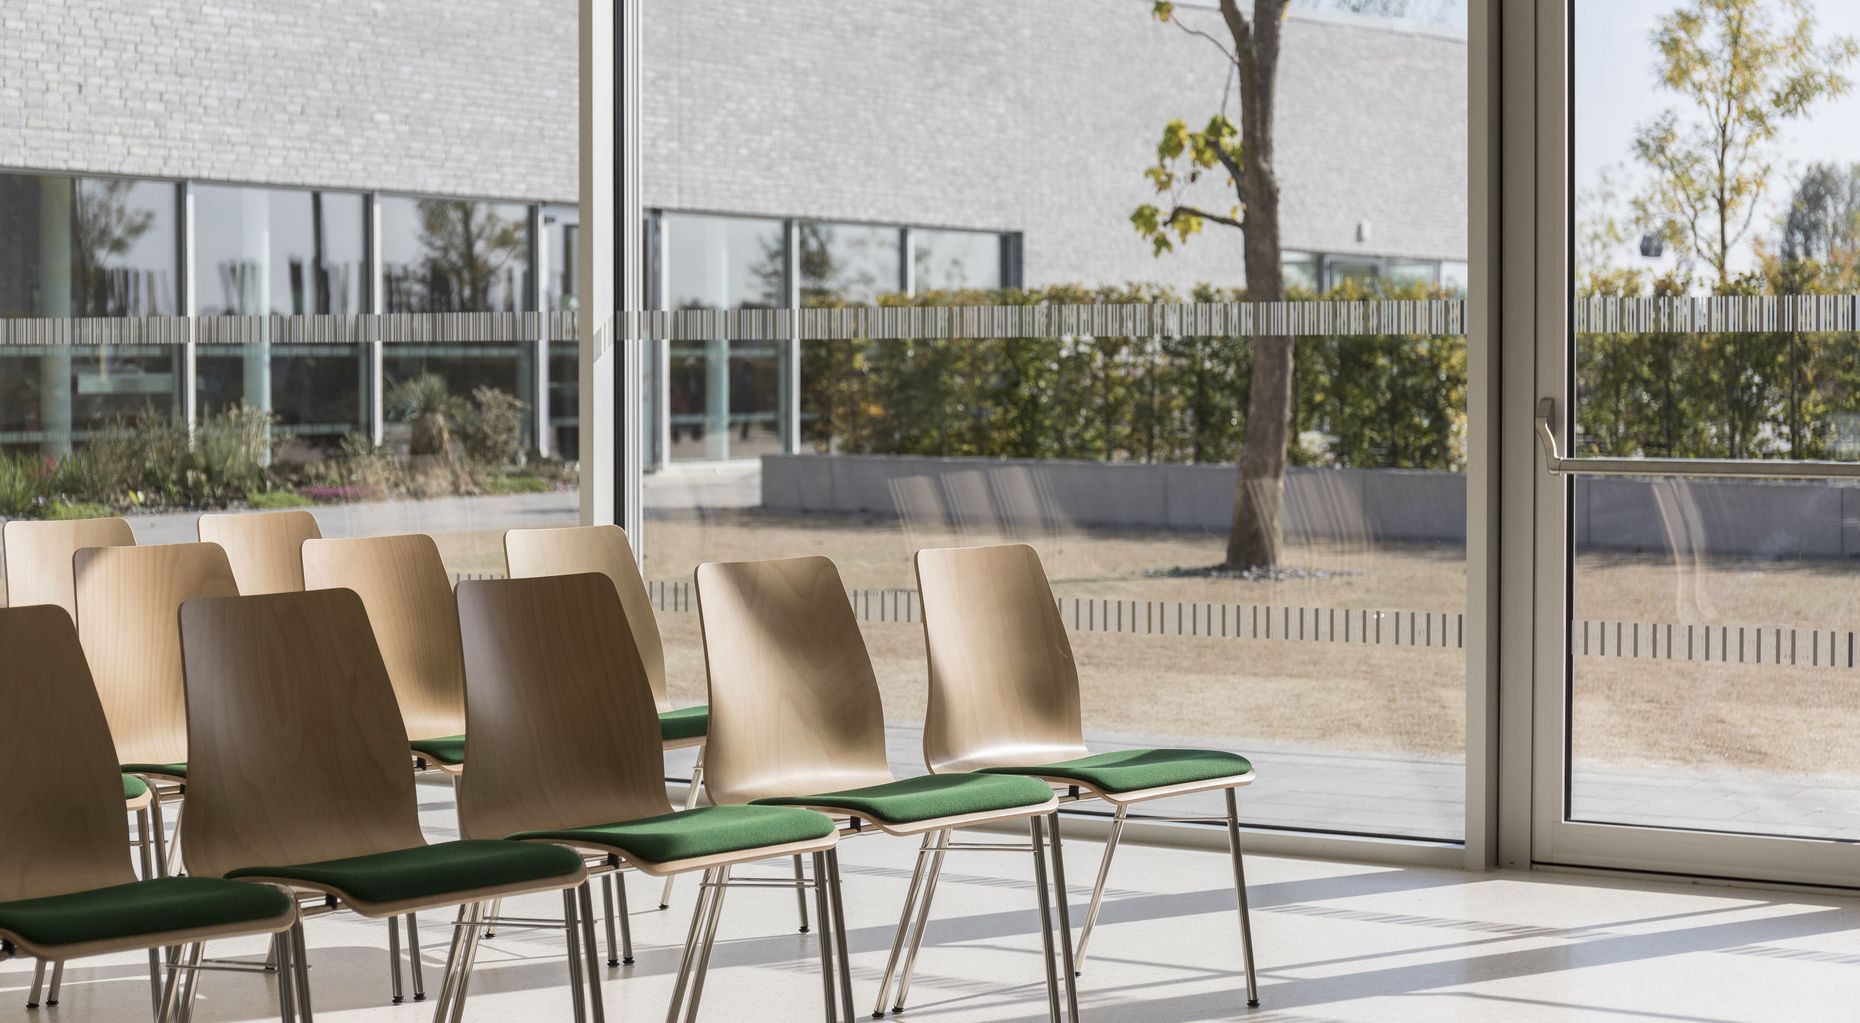 Stühle mit grünen Sitzkissen im Besucherzentrum der Gärten der Welt